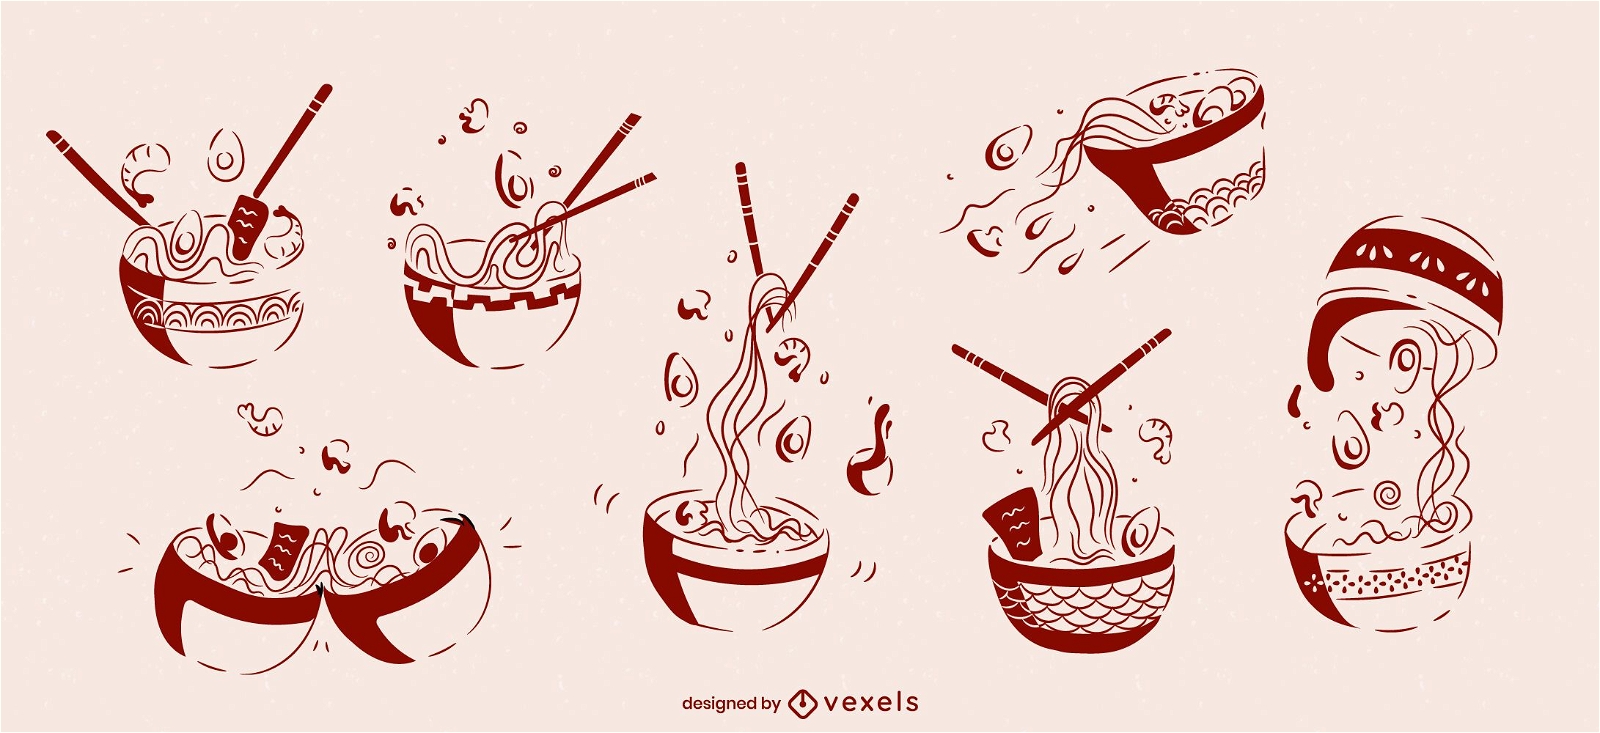 Ramen bowl japanese food sketch set